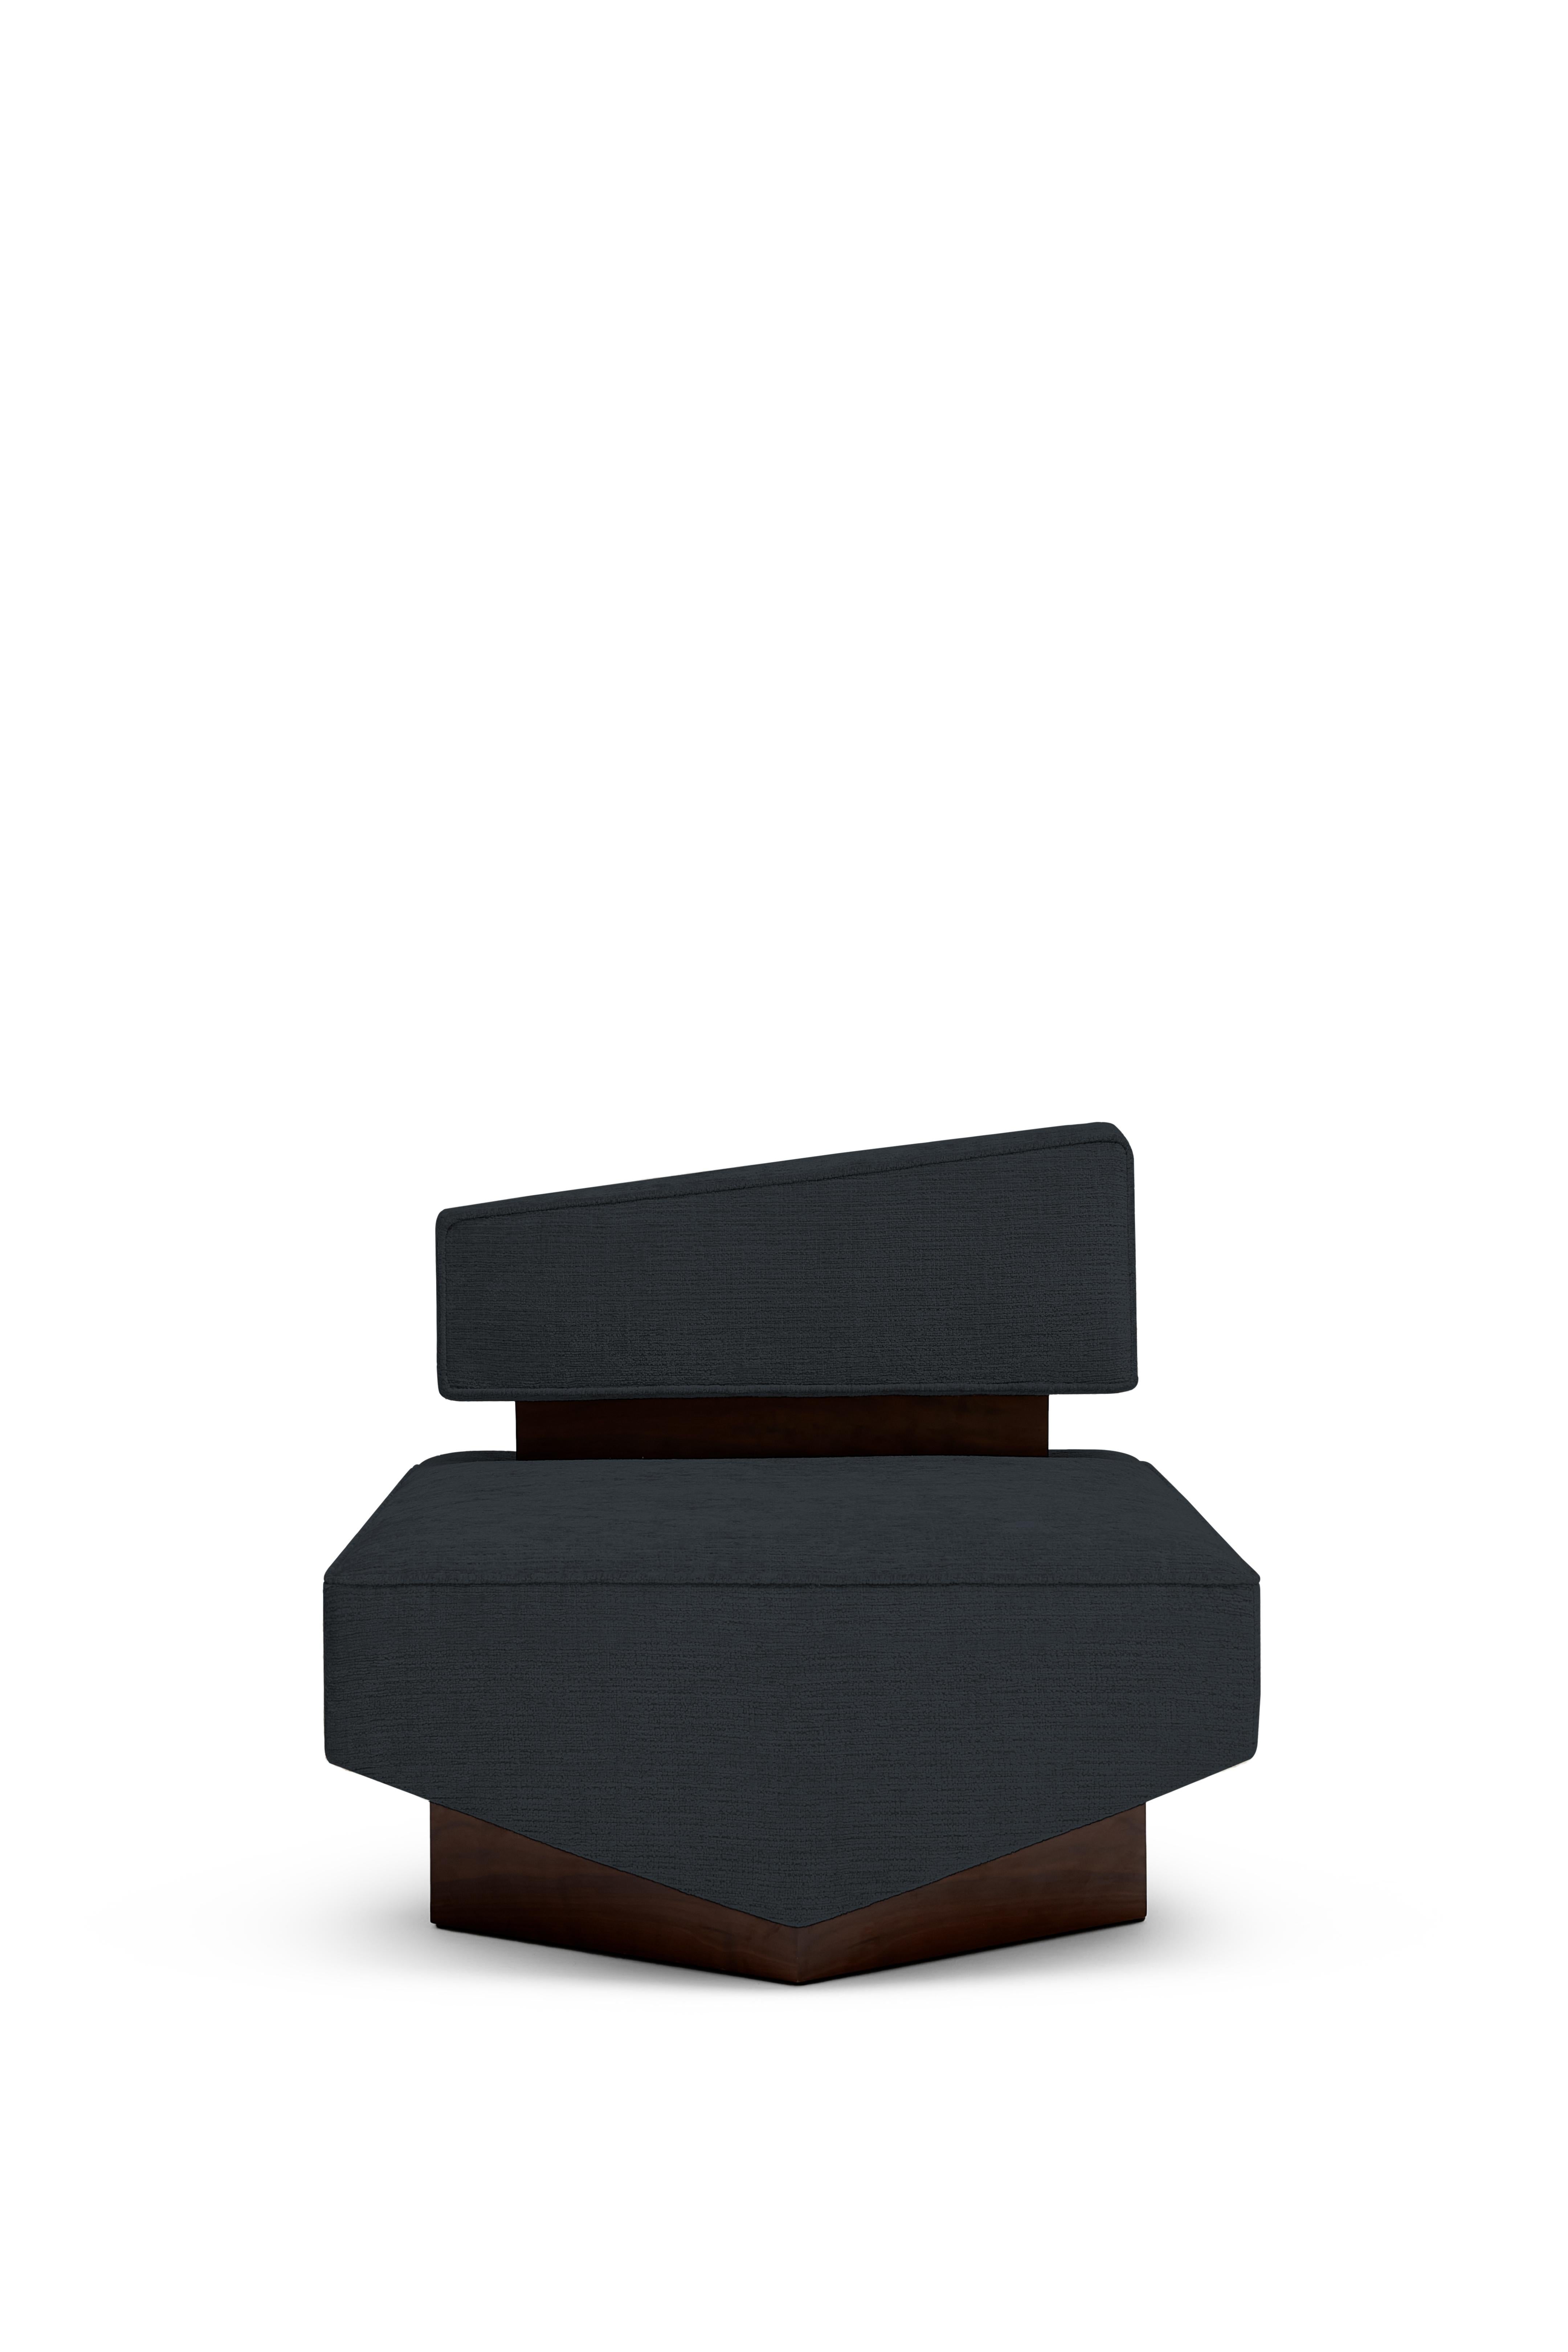 DIVERGENT Sessel von Marta Delgado Studio

Stoff: Vintage 
Farbe: Navy (weitere Farben verfügbar)
Holz: Amerikanischer Nussbaum Veener

Abmessungen:
Breite: 31,5